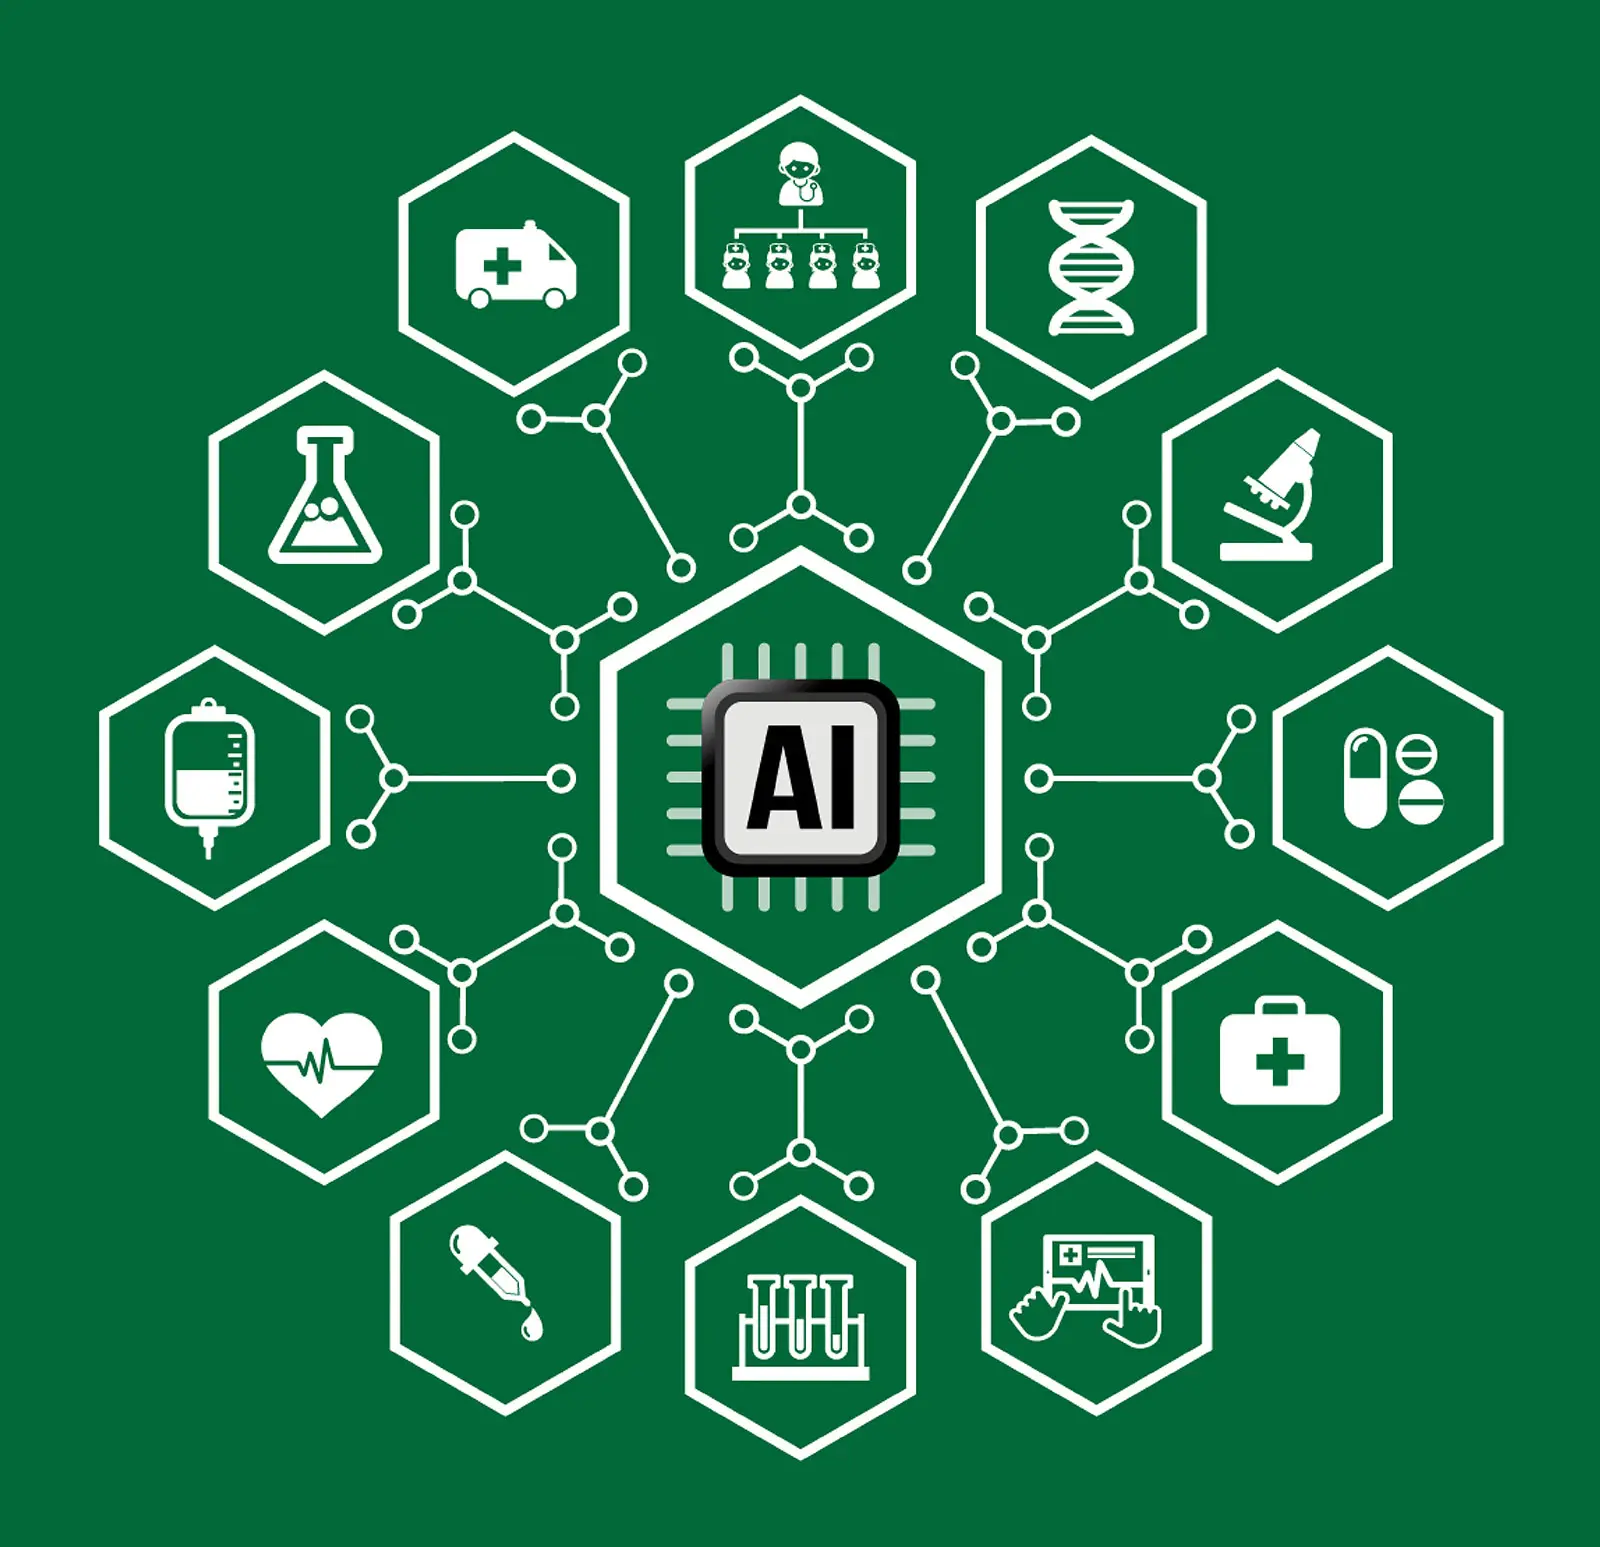 ventajas y desventajas de la inteligencia artificial en la medicina - Qué desventajas tiene la inteligencia artificial en la medicina